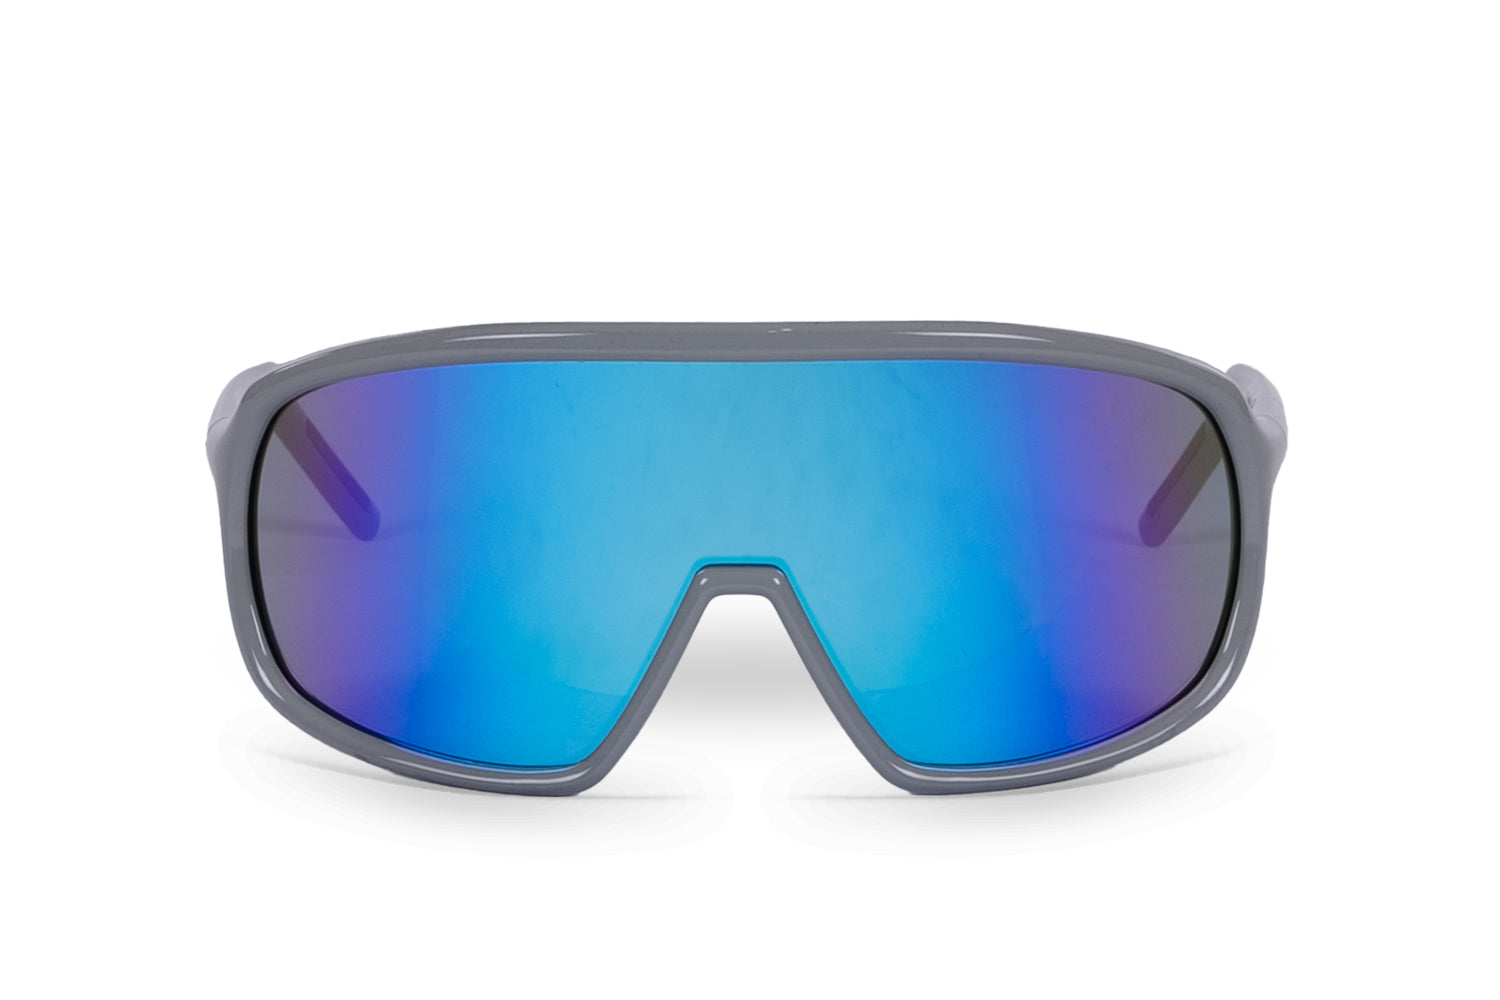 Carnac Para Sunglasses / Cool Grey Frame & Blue Revo Lens